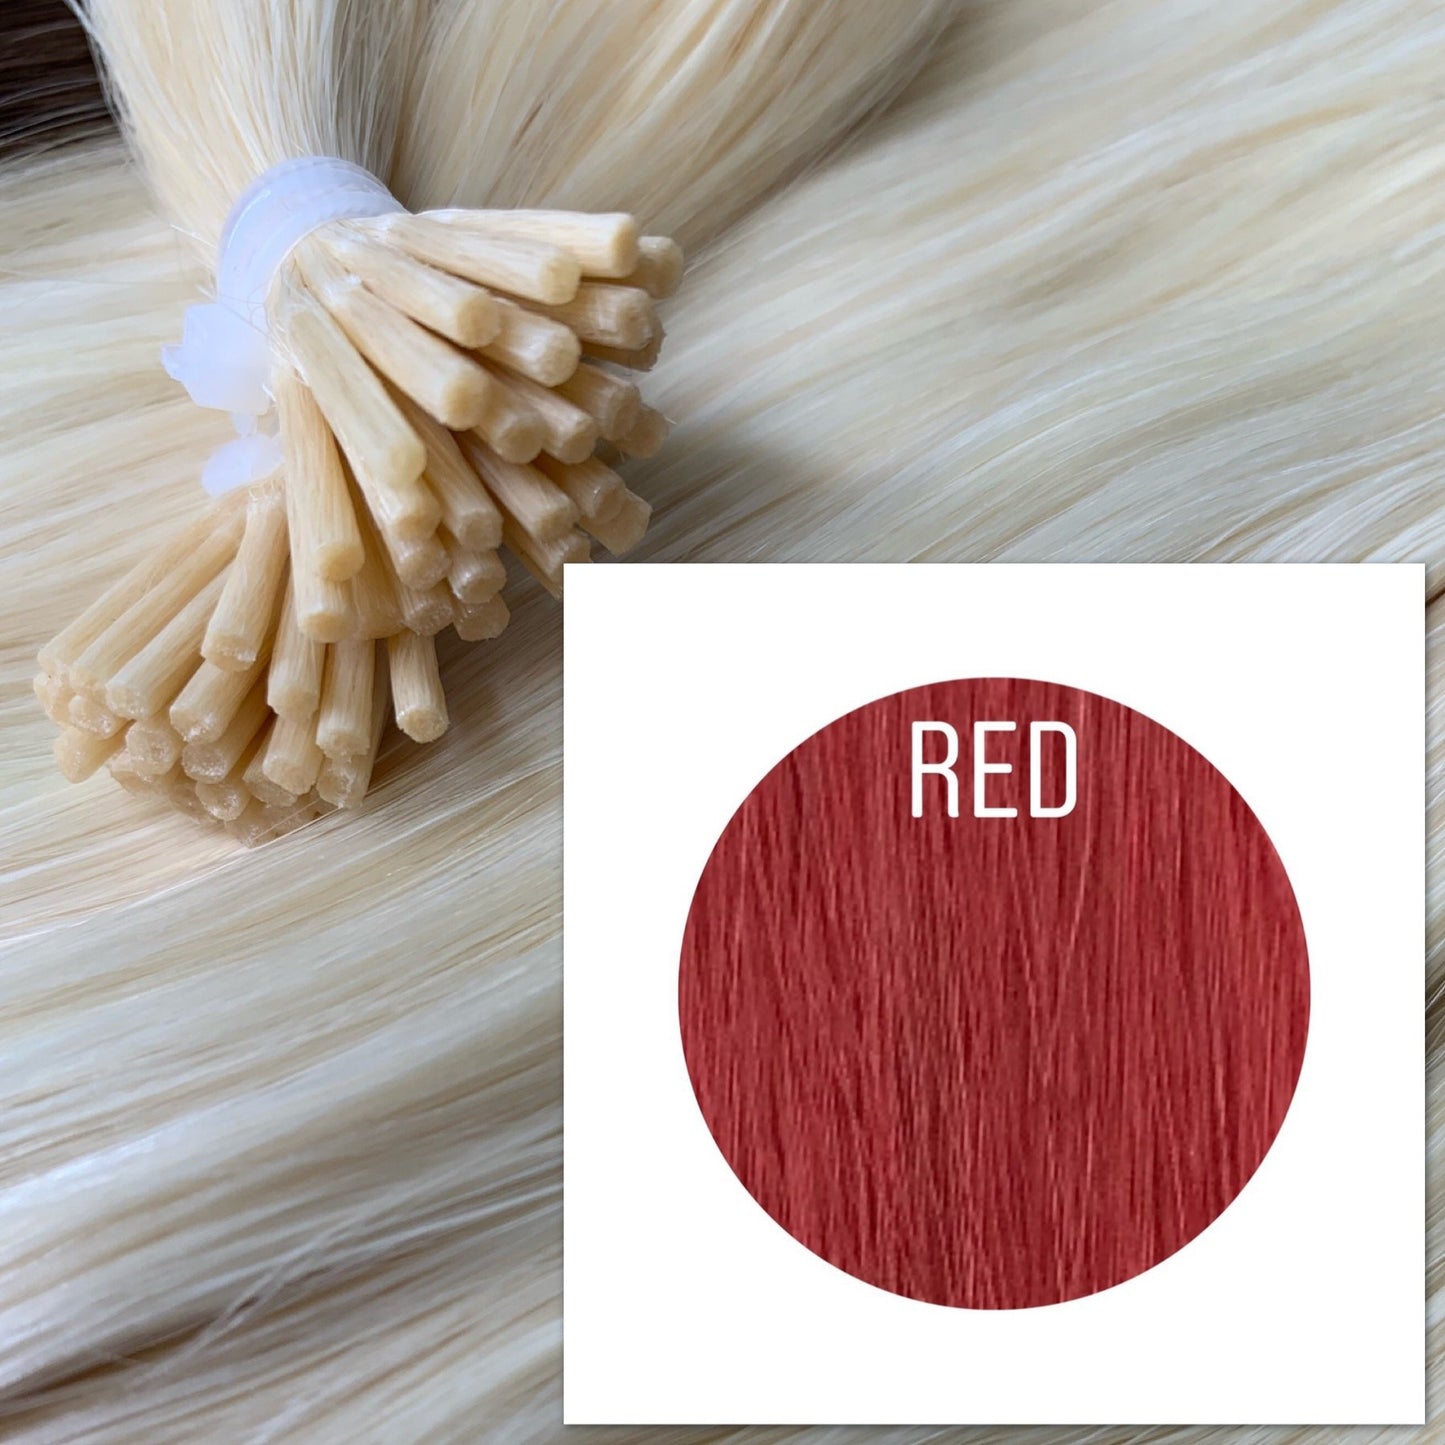 Micro links Color Red GVA hair_Retail price - GVA hair